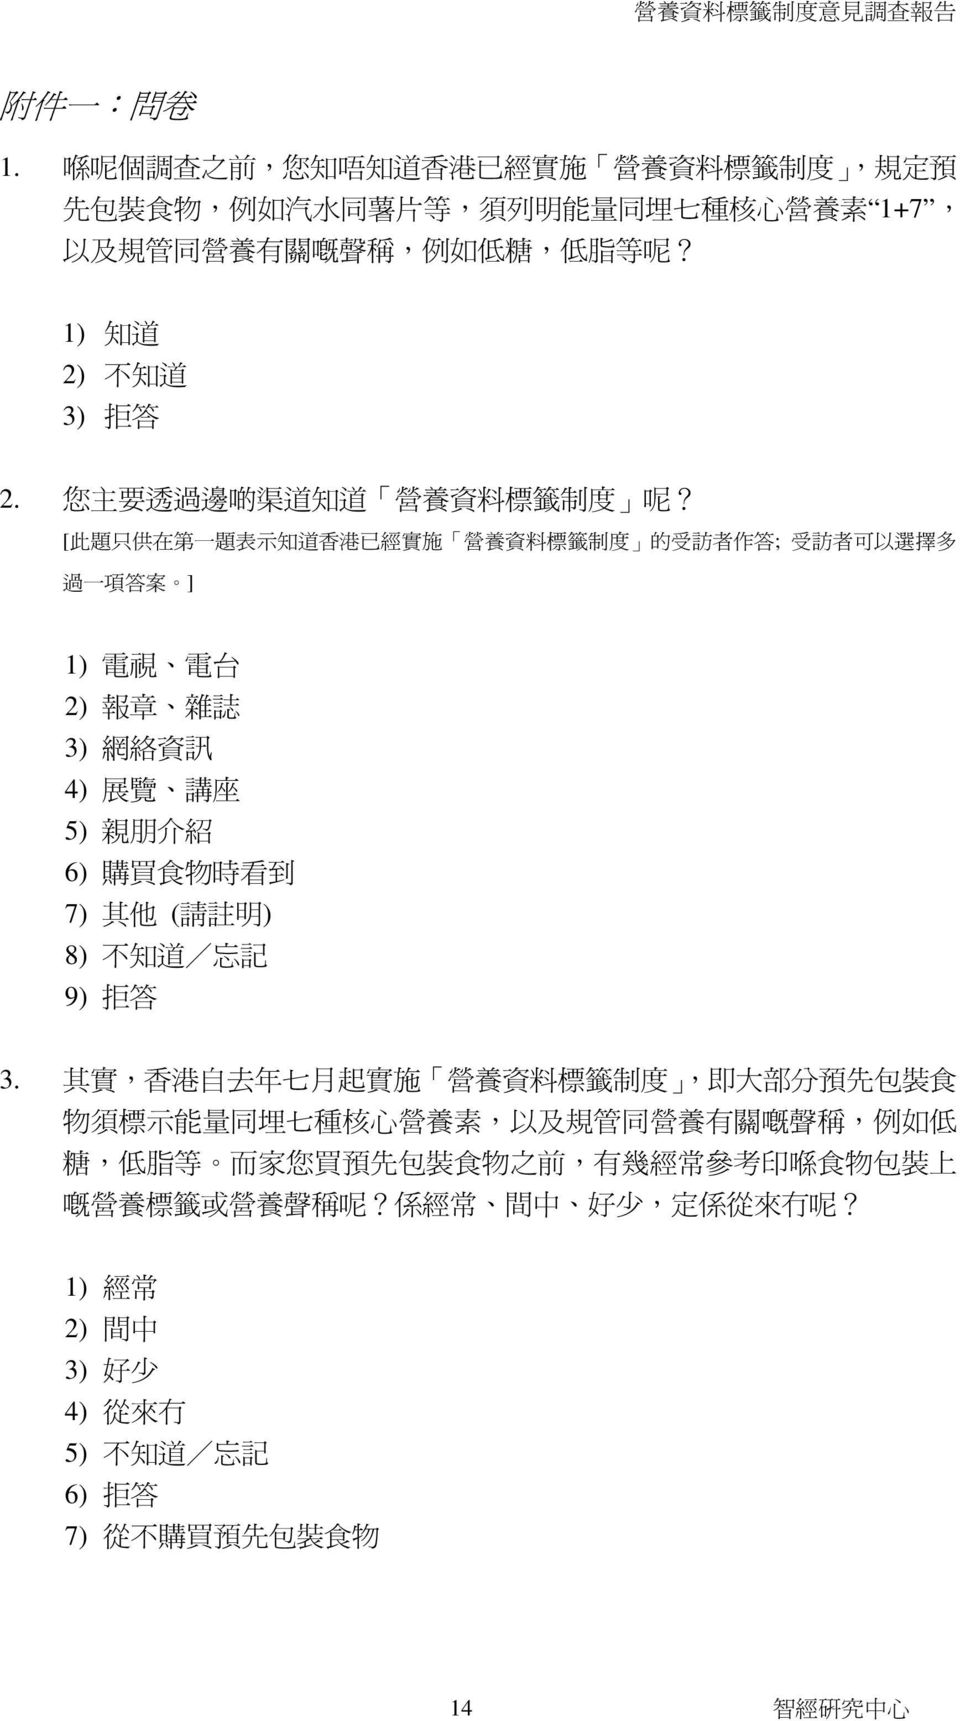 [ 此 題 只 供 在 第 一 題 表 示 知 道 香 港 已 經 實 施 營 養 資 料 標 籤 制 度 的 受 訪 者 作 答 ; 受 訪 者 可 以 選 擇 多 過 一 項 答 案 ] 1) 電 視 電 台 2) 報 章 雜 誌 3) 網 絡 資 訊 4) 展 覽 講 座 5) 親 朋 介 紹 6) 購 買 食 物 時 看 到 7) 其 他 ( 請 註 明 ) 8) 不 知 道